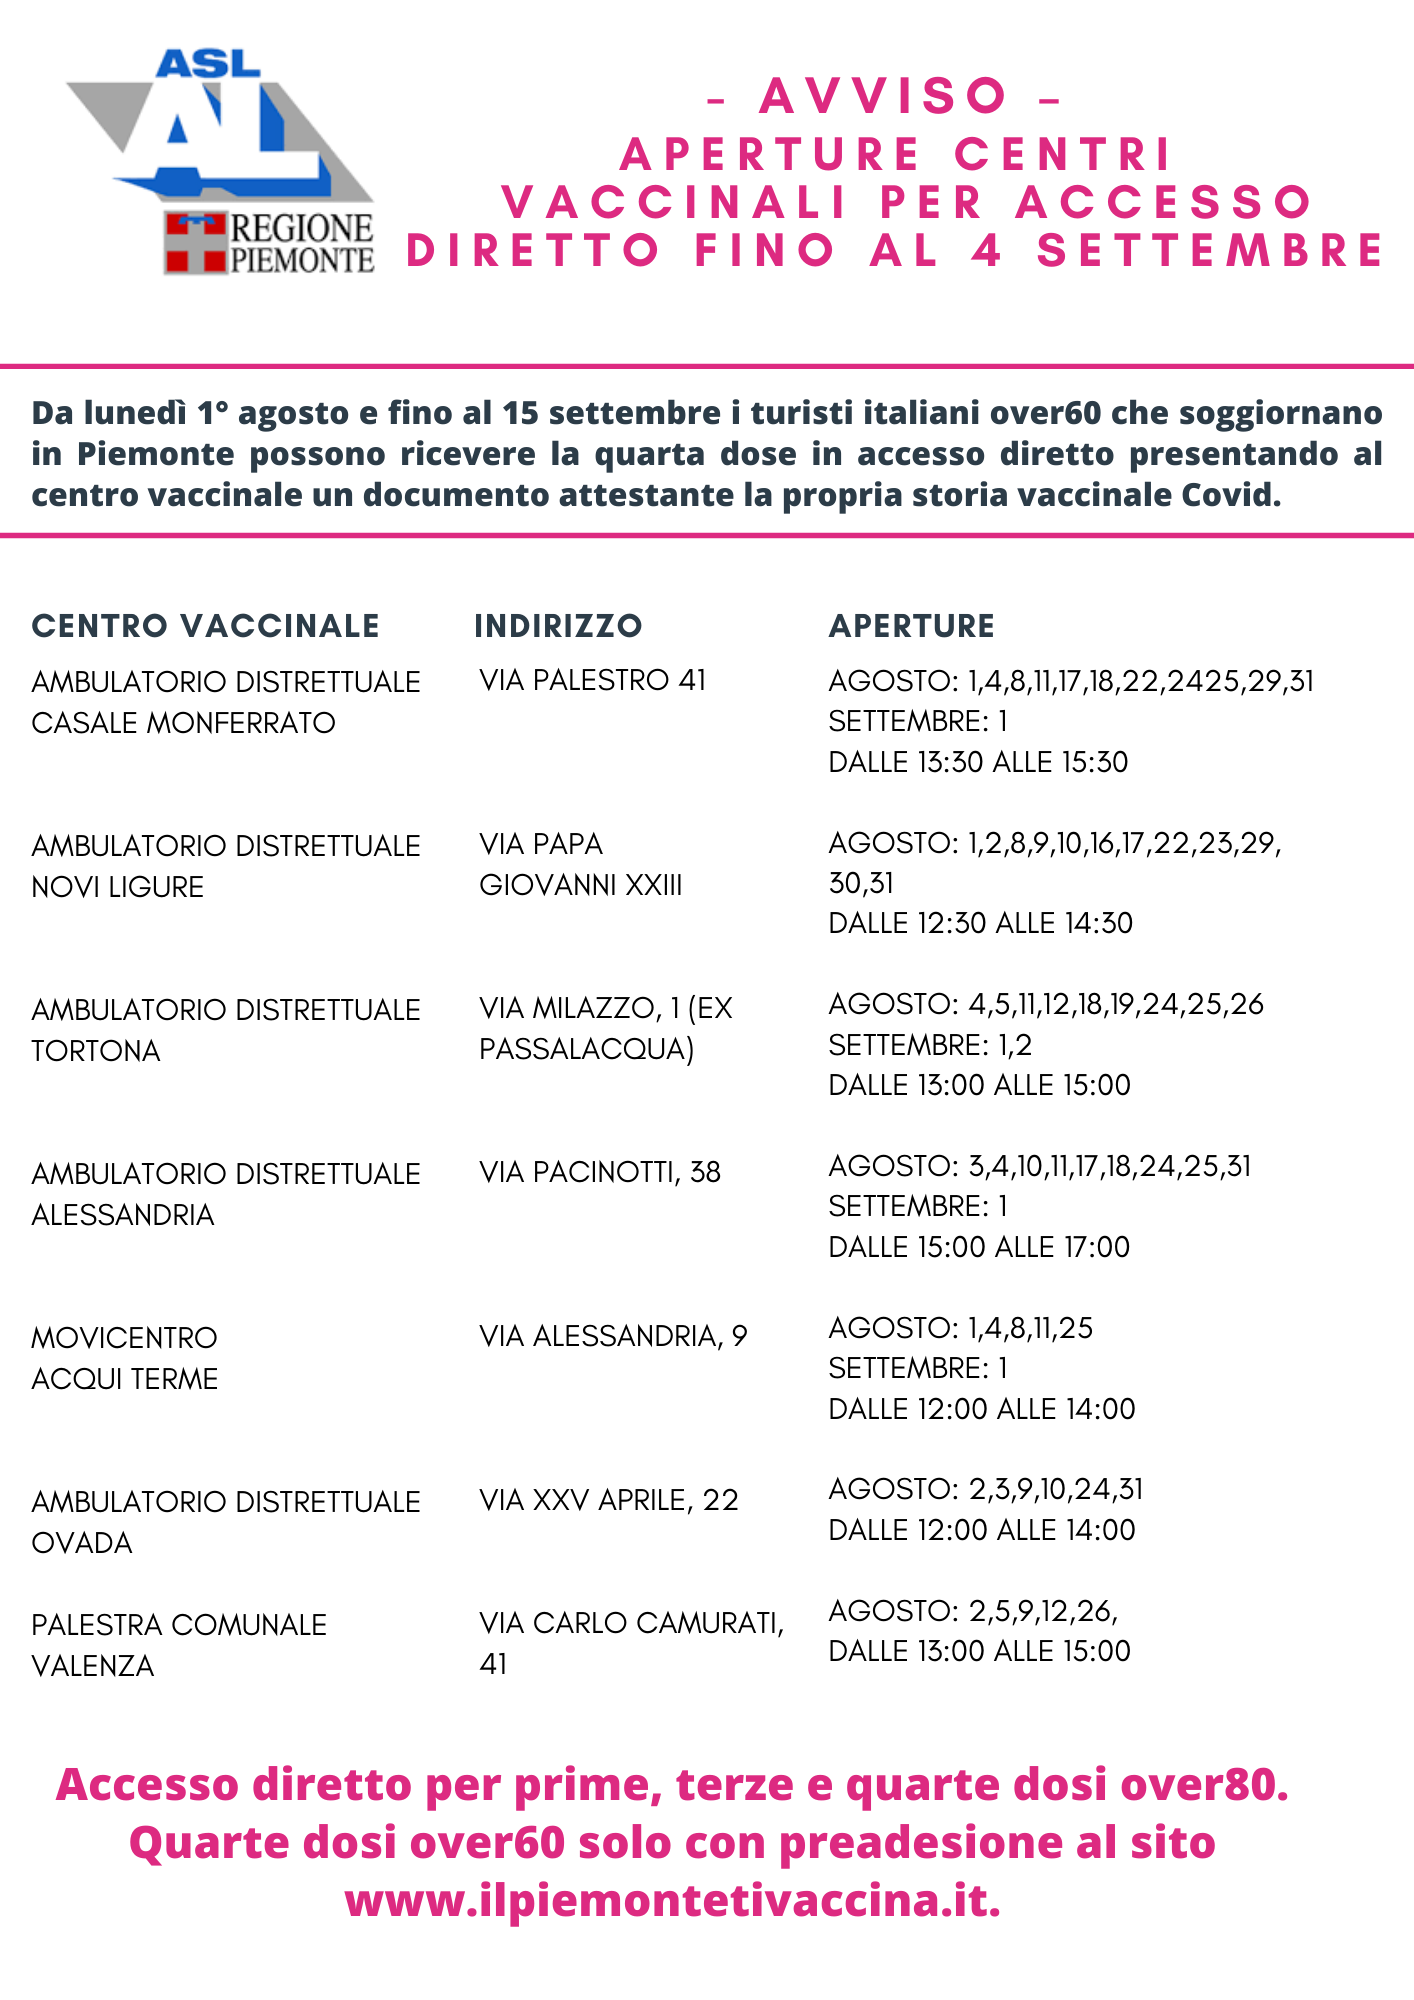 Calendario Centri vaccinali ad accesso diretto fino al 4 settembre